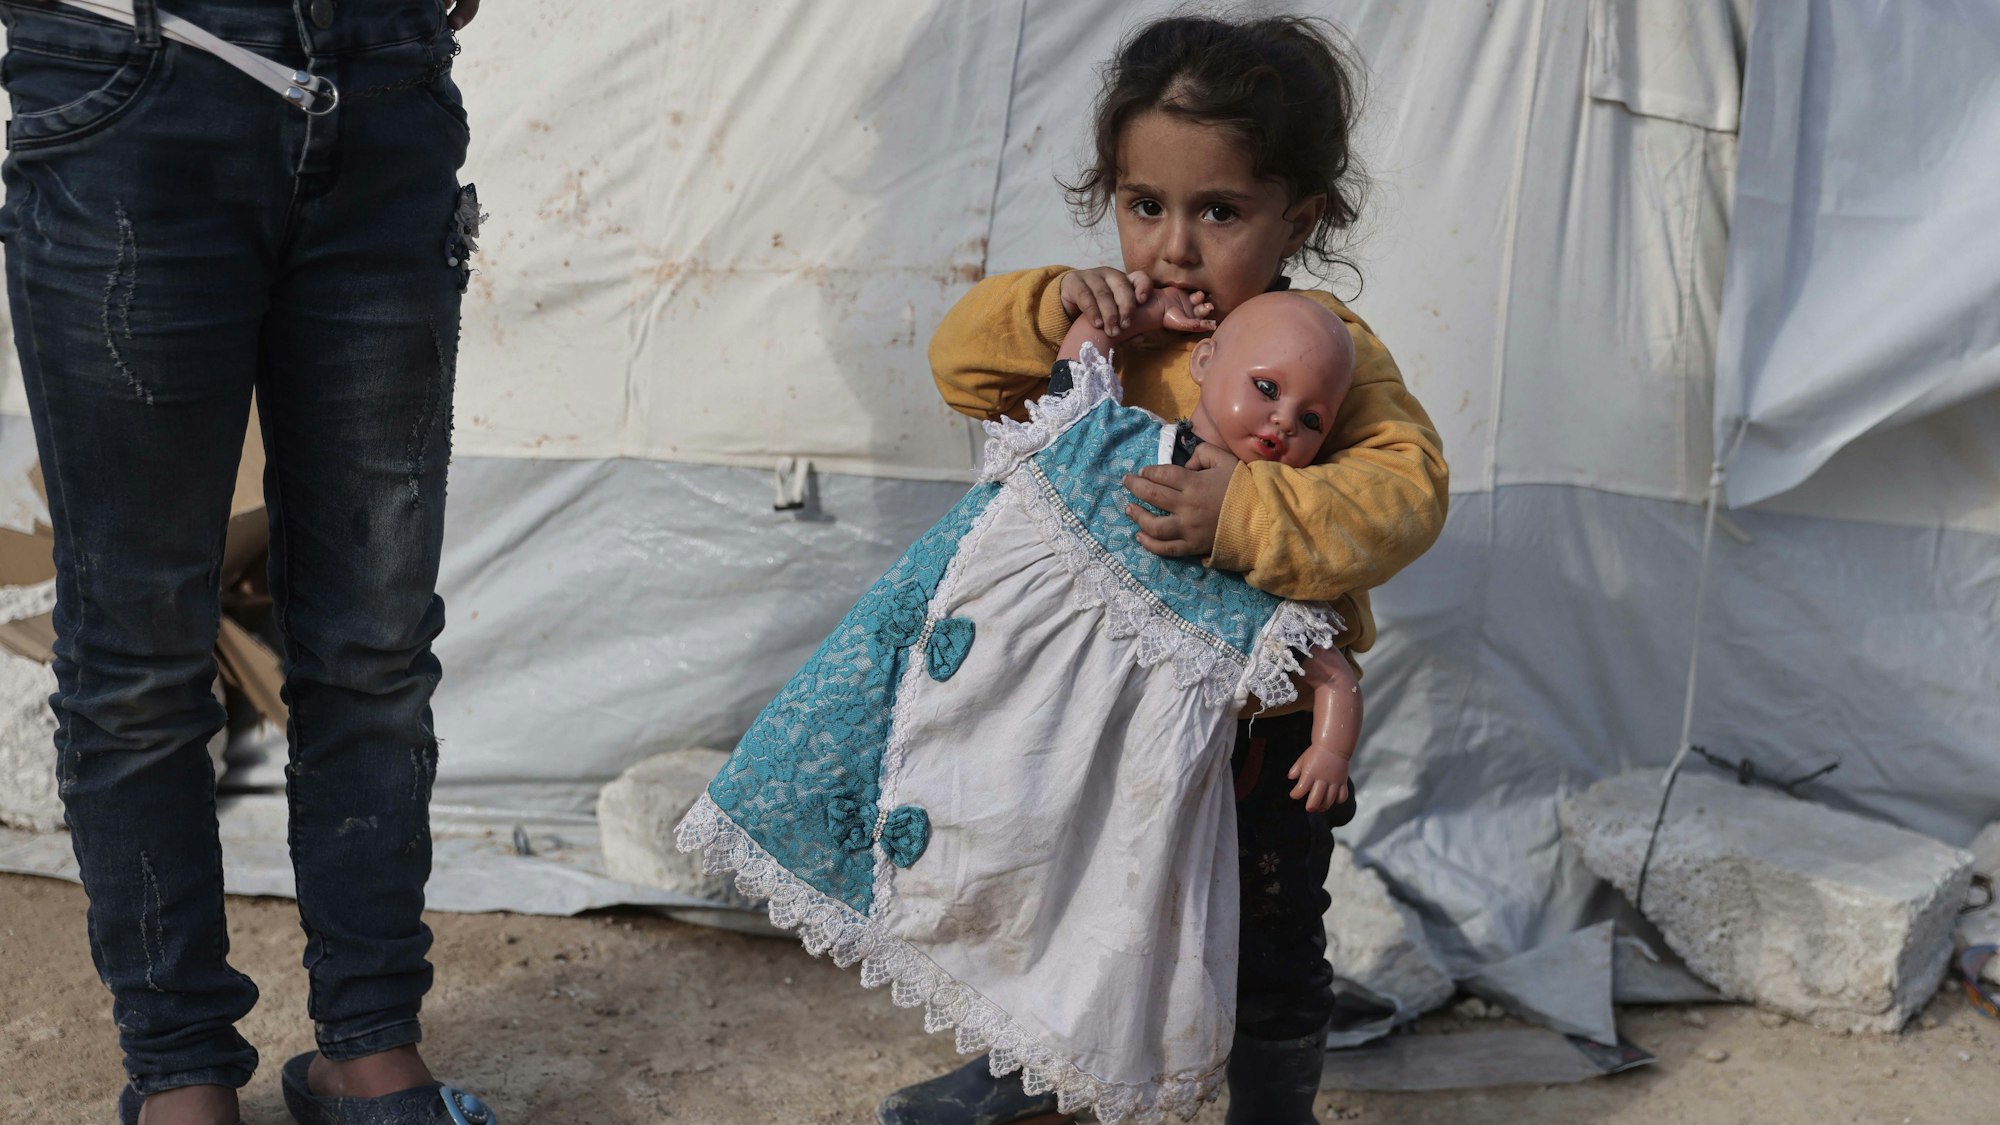 19.02.2023, Syrien, Salqin: Ein Kind hält eine Puppe in der Hand in einer Notunterkunft, die für die Opfer des Erdbebens an der türkisch-syrischen Grenze errichtet wurde. In Syrien sind bisher rund 5900 tote Menschen in Zusammenhang mit den verheerenden Beben gezählt worden.